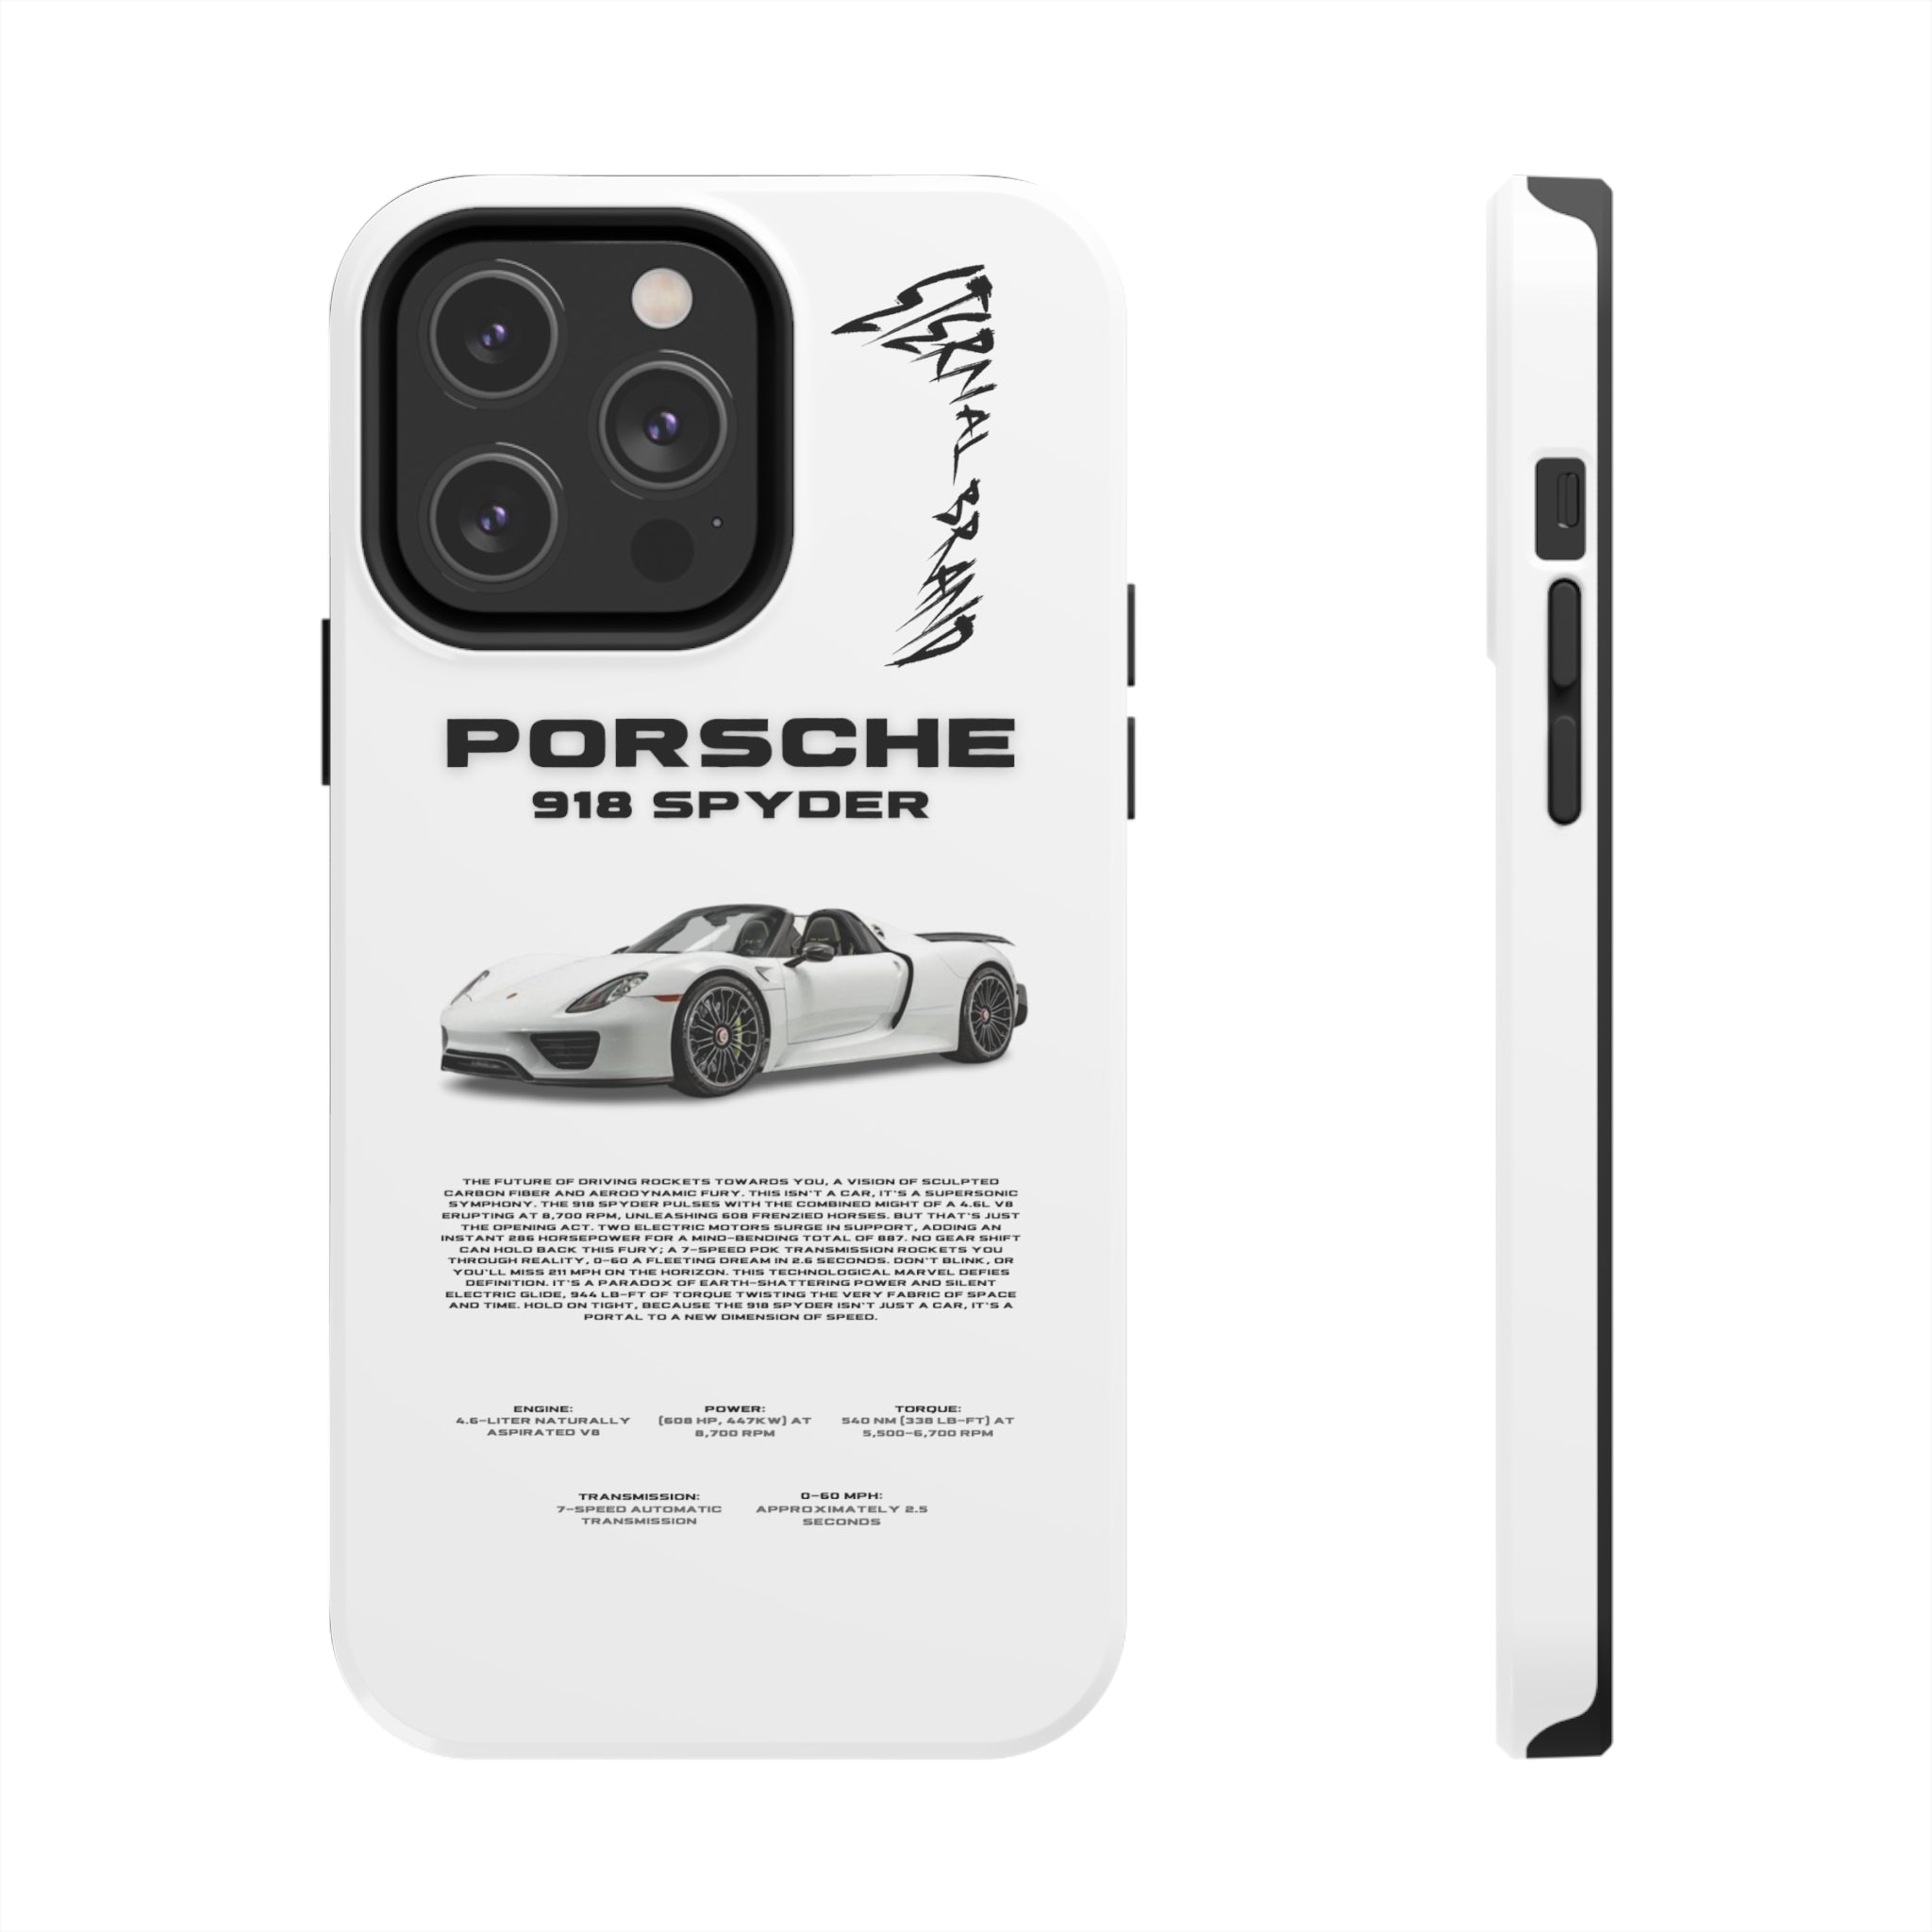 Porsche 918 Spyder "White"